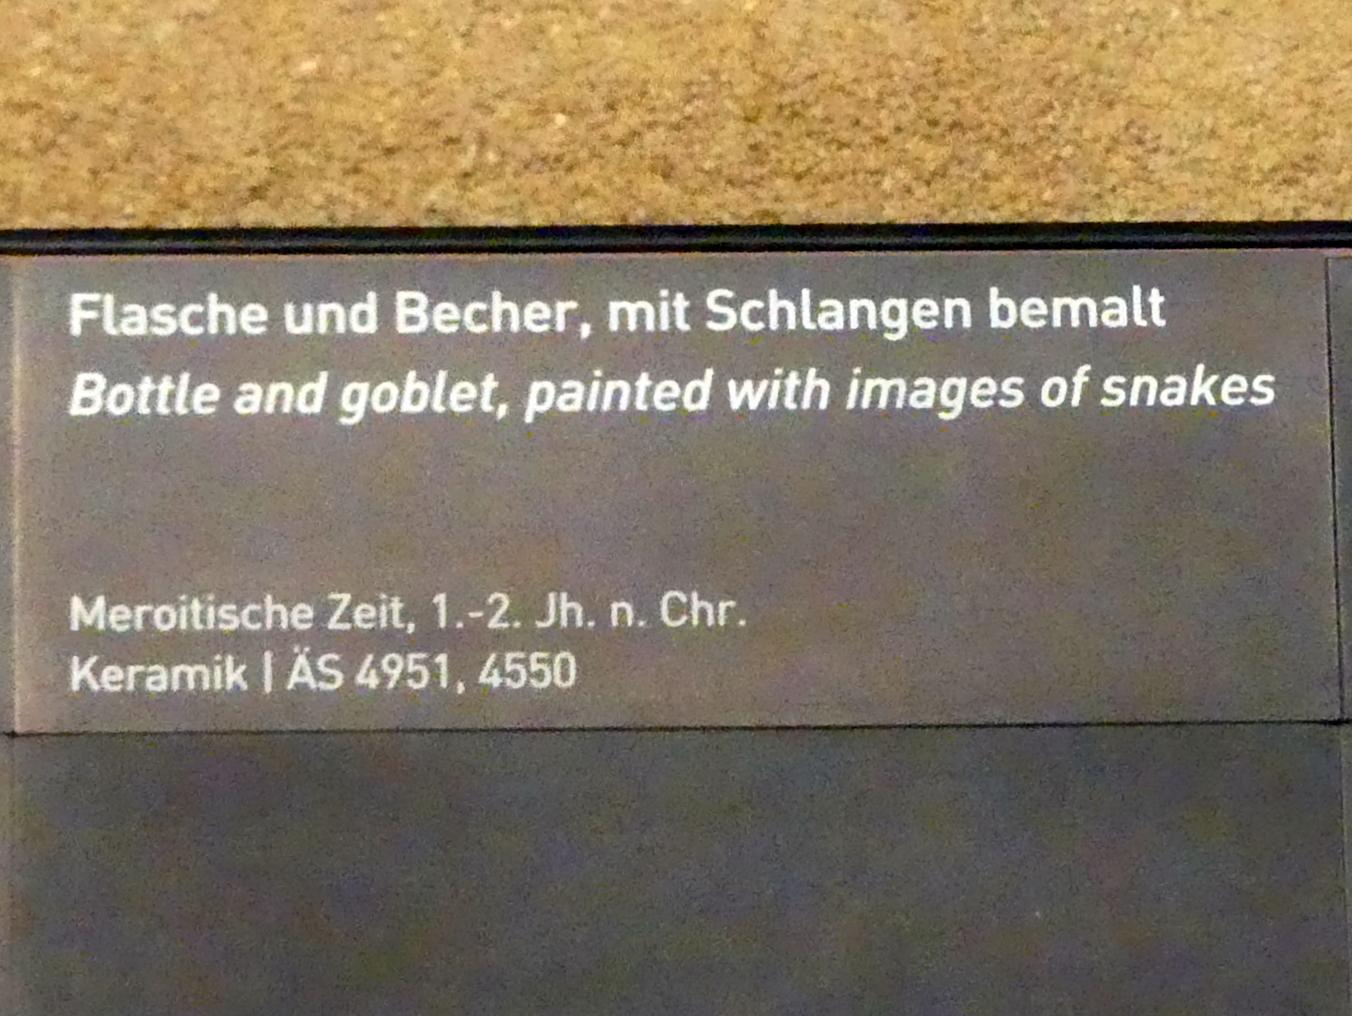 Becher, mit Schlangen bemalt, Meroitische Zeit, 200 v. Chr. - 500 n. Chr., 1 - 200, Bild 2/2